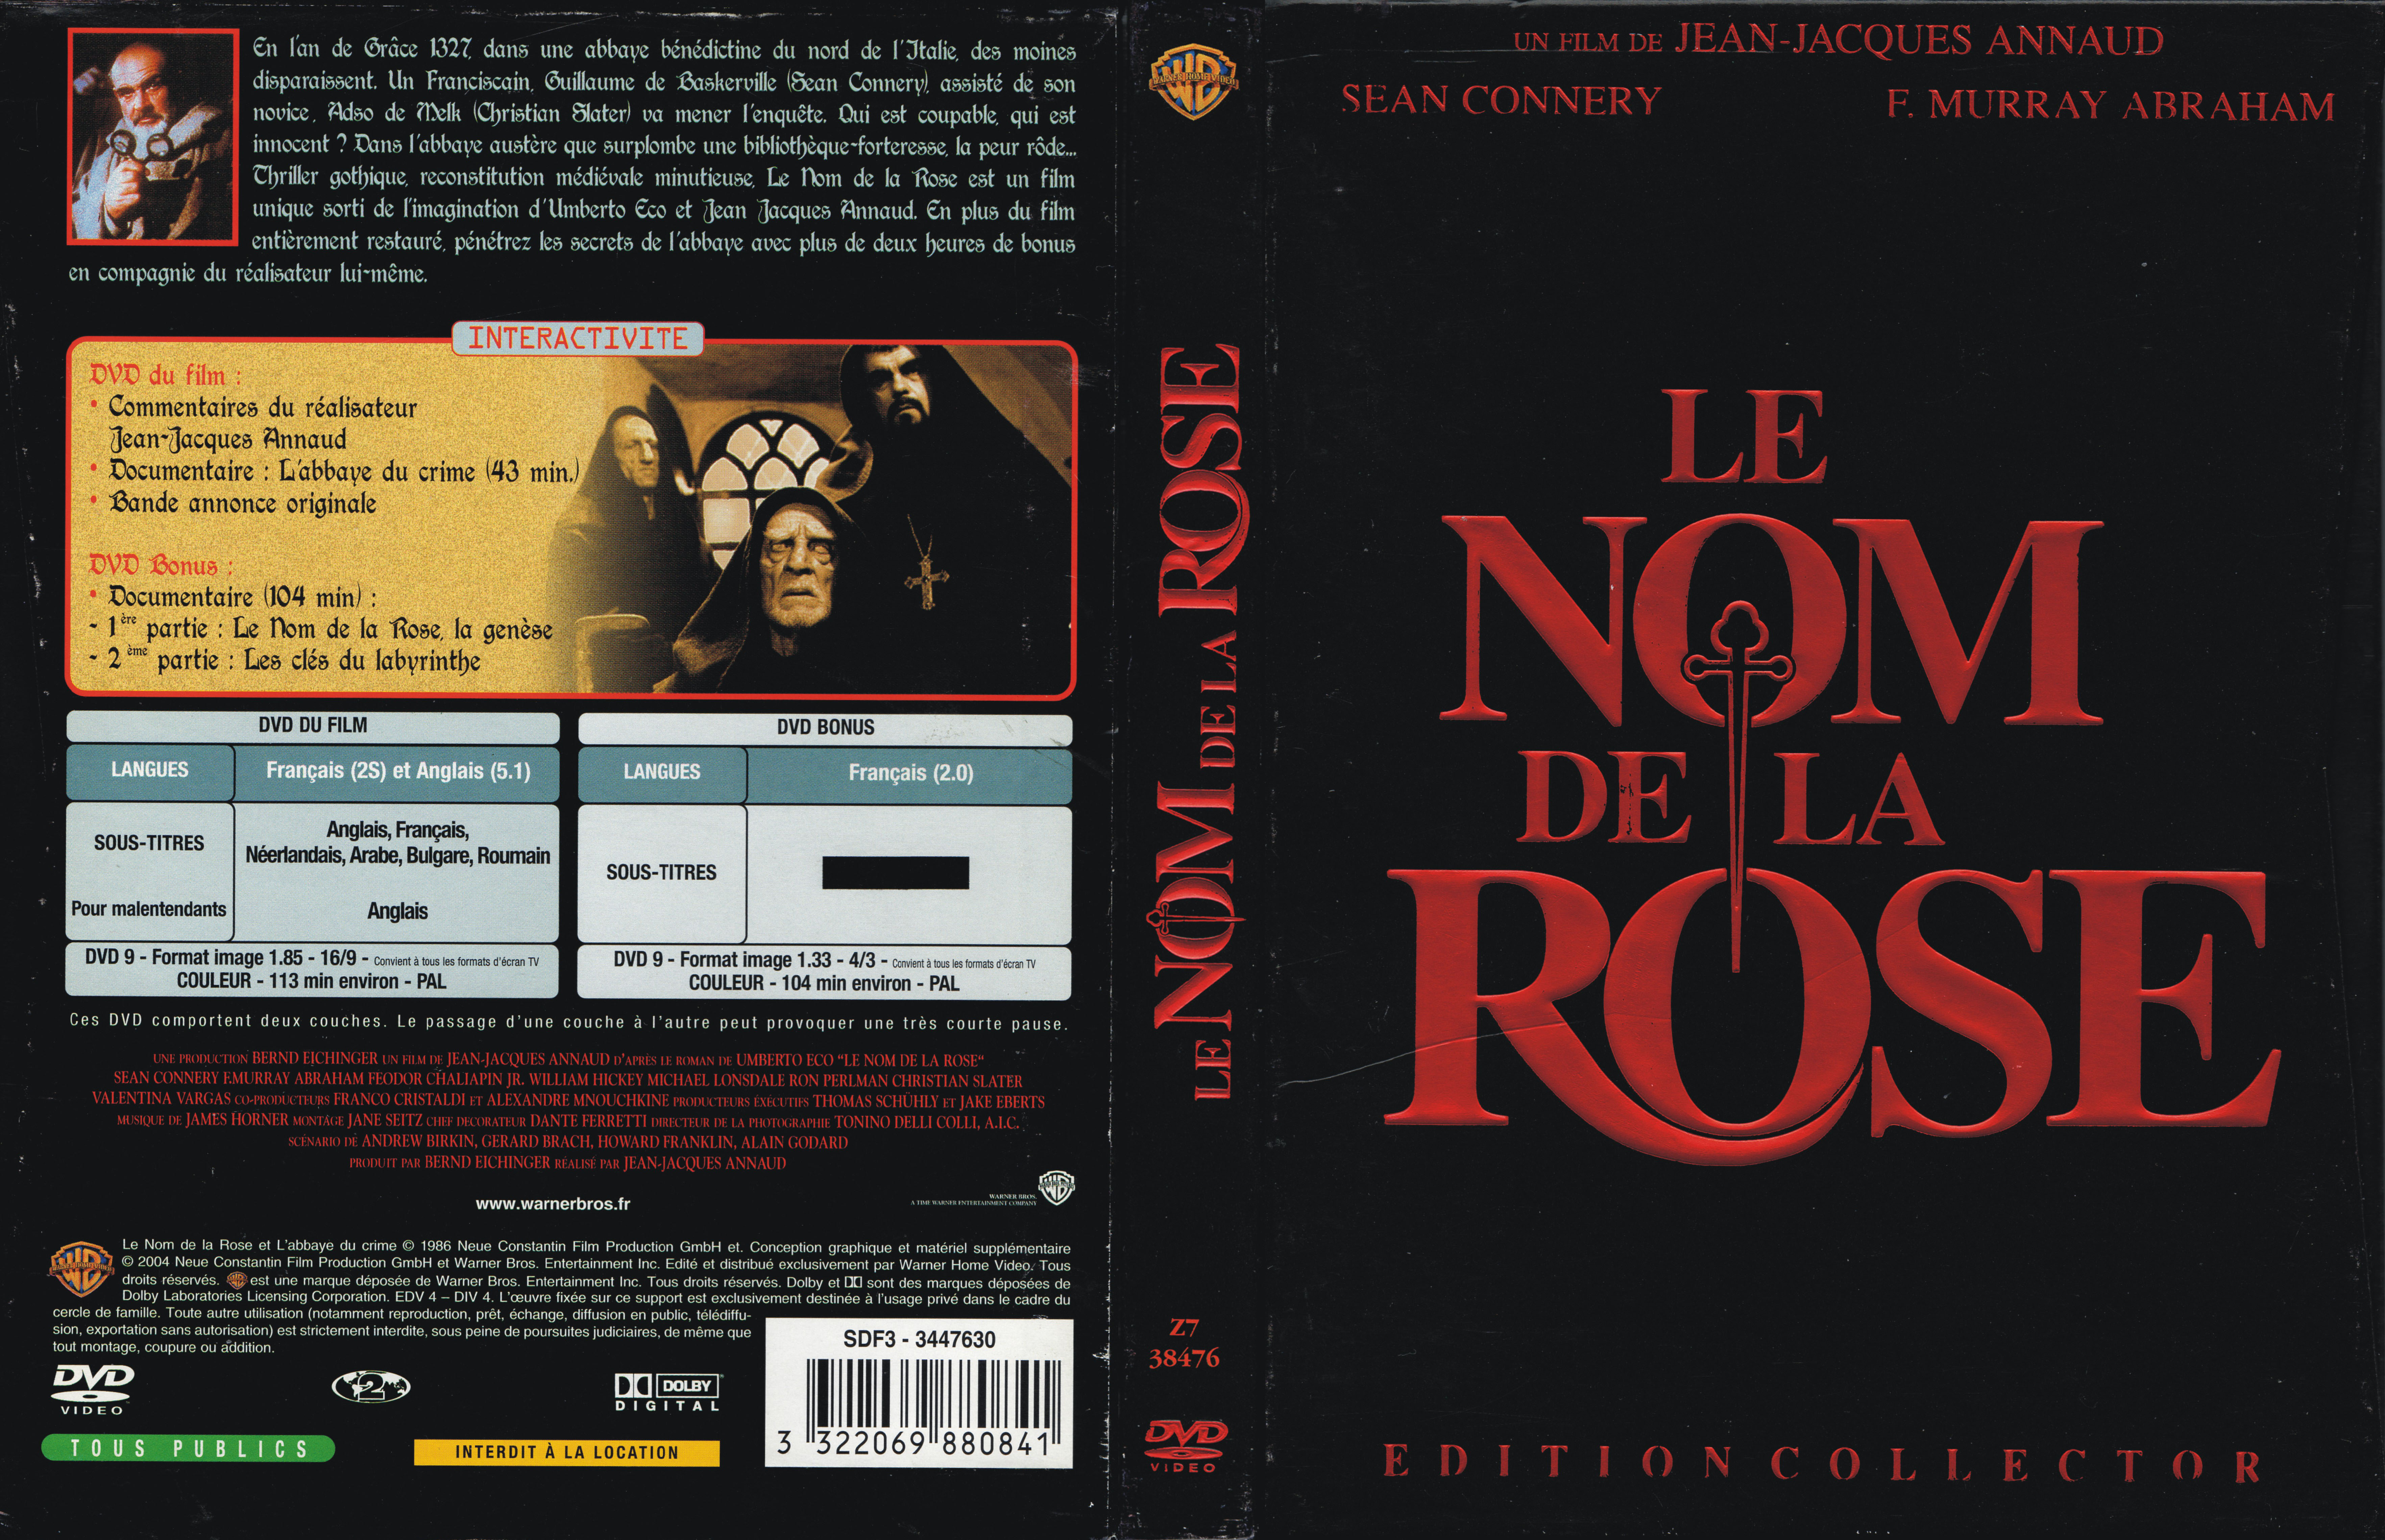 Jaquette DVD Le nom de la rose v4